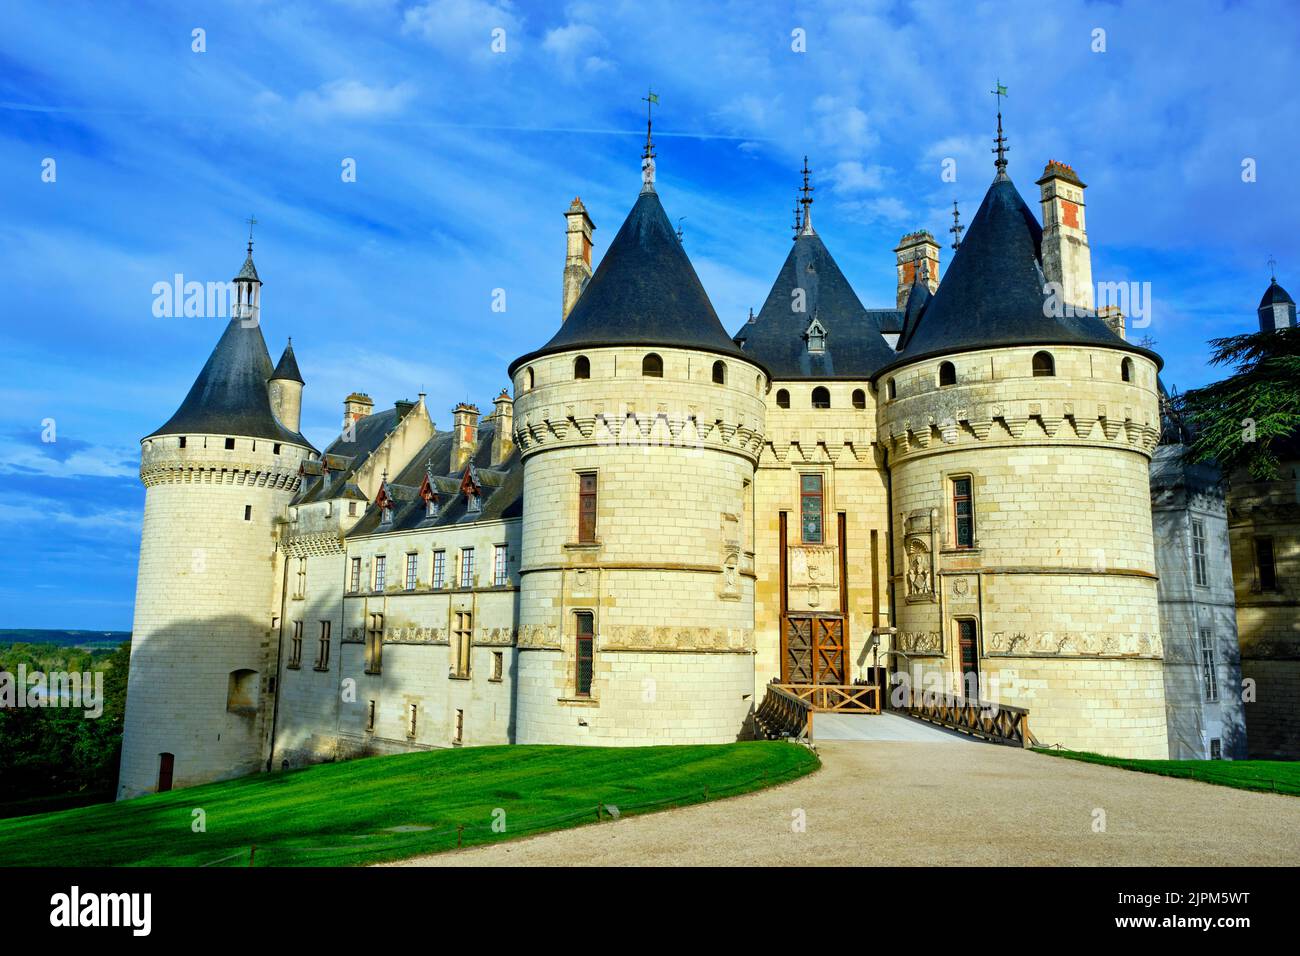 France, Indre-et-Loire (37), Loire Valley listed as World Heritage by UNESCO, Chaumont-sur-Loire, Chaumont-sur-Loire castle Stock Photo